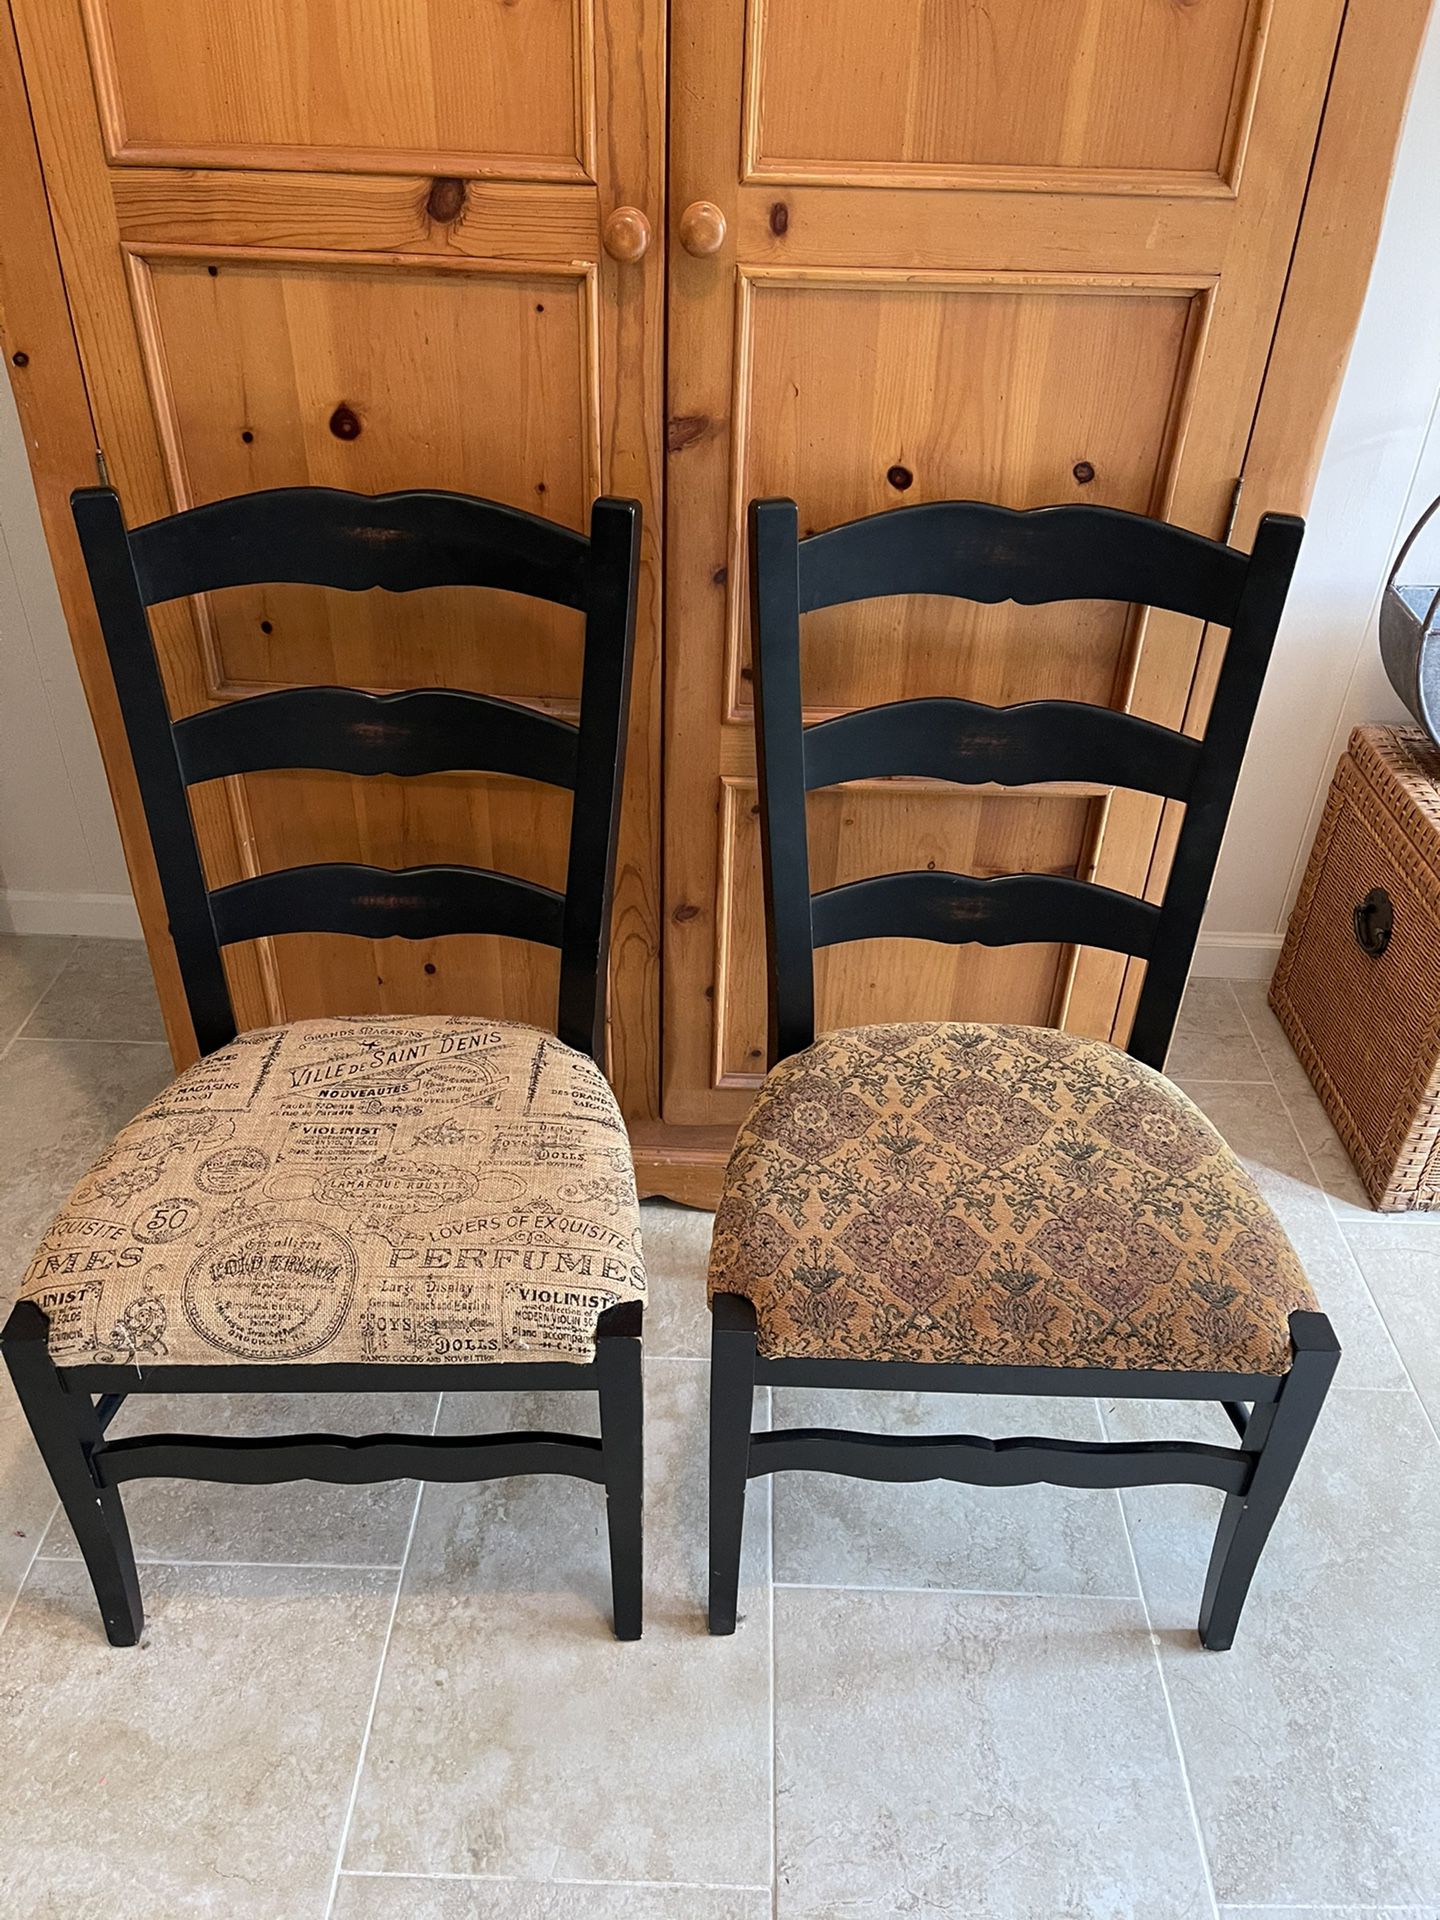 Arhaus chairs